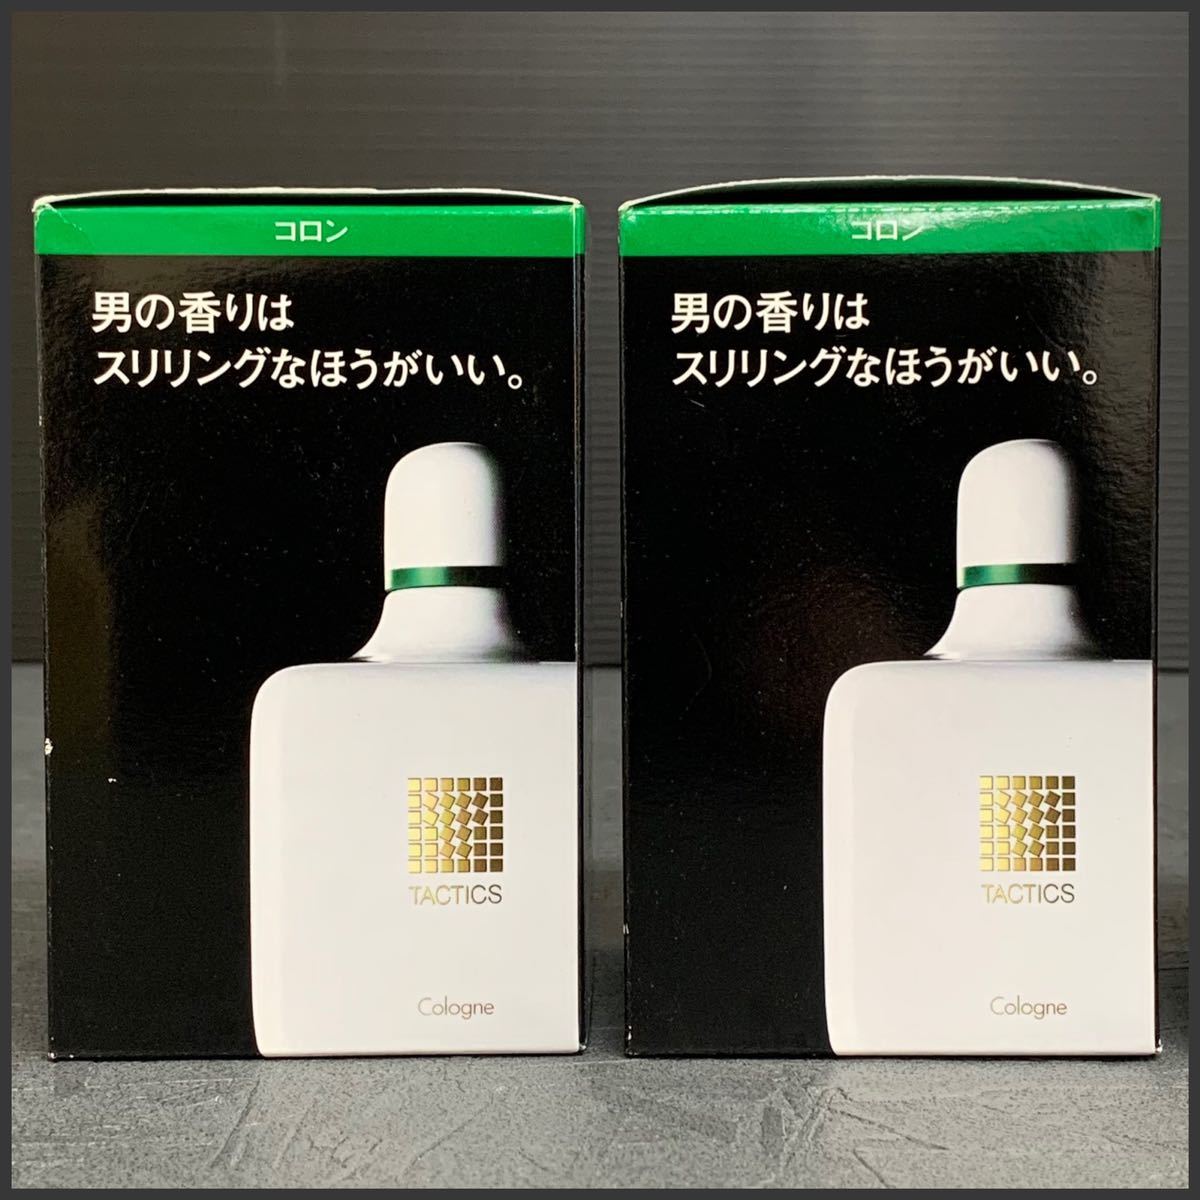 2個セット 貴重 未使用 未開封 資生堂 タクティクス コロン 香水 定価5,000円×2個 MADE IN Cosmetics  perfume パフューム